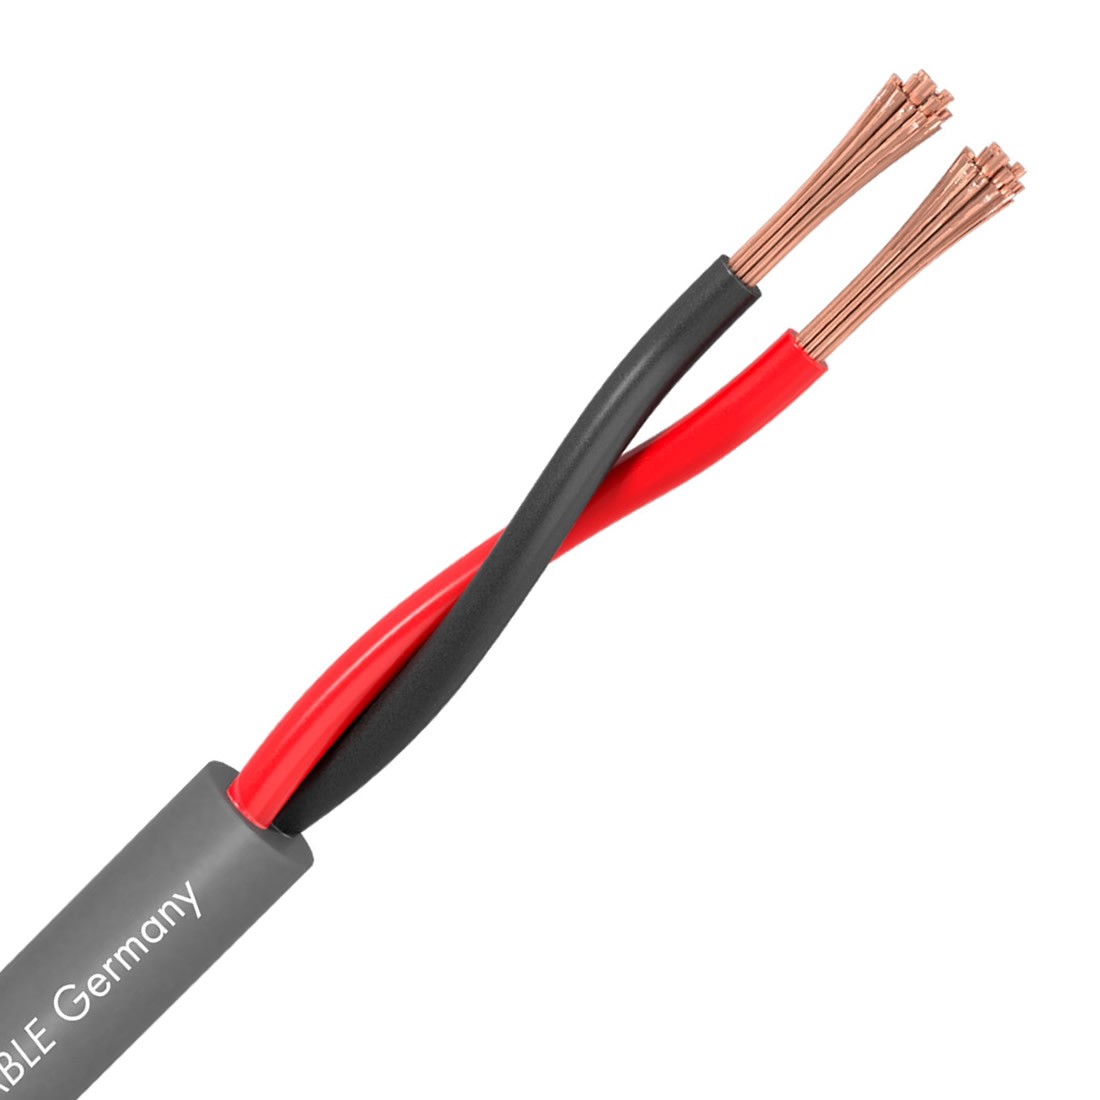 2 x 1,5mm2 Cuivre OFC 10m Cable Haut Parleur Meridian SP215 Noir Sommer Cable 